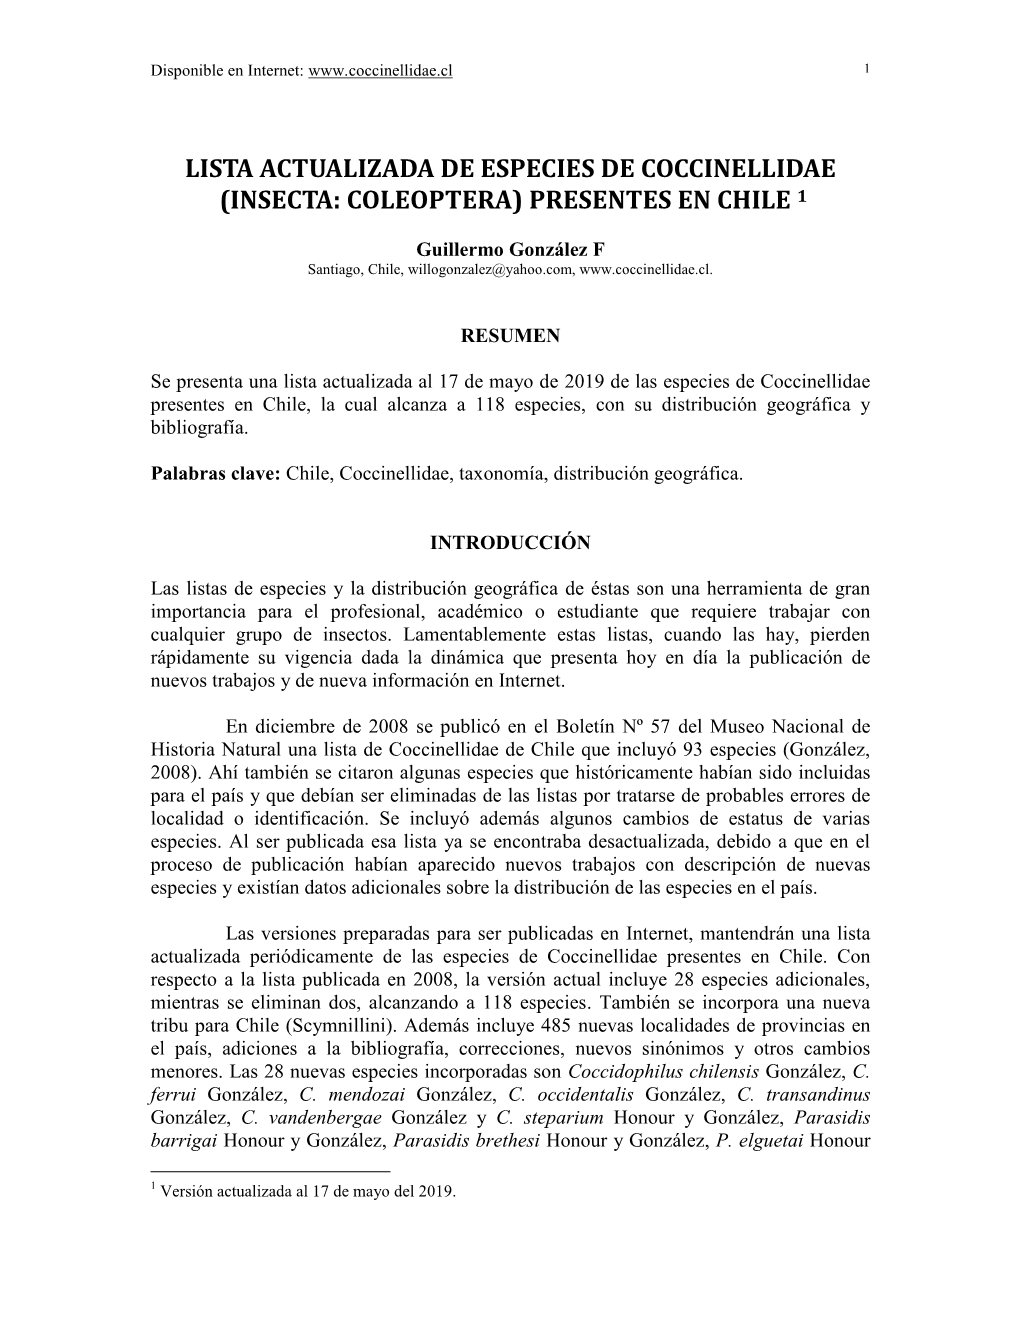 Lista Actualizada De Especies De Coccinellidae (Insecta: Coleoptera) Presentes En Chile 1